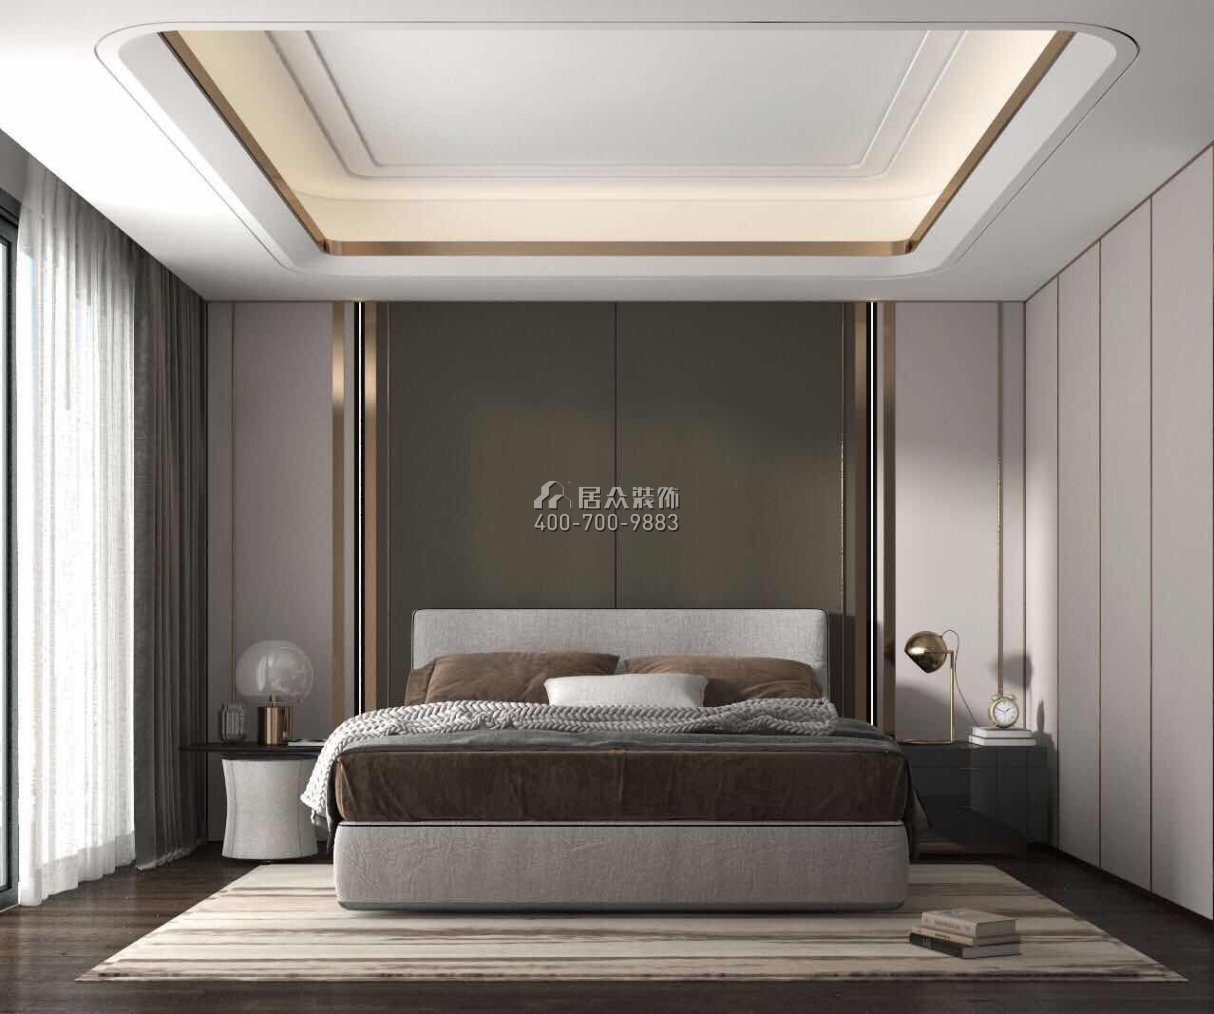 中欣楚天雅郡120平方米现代简约风格平层户型卧室装修效果图